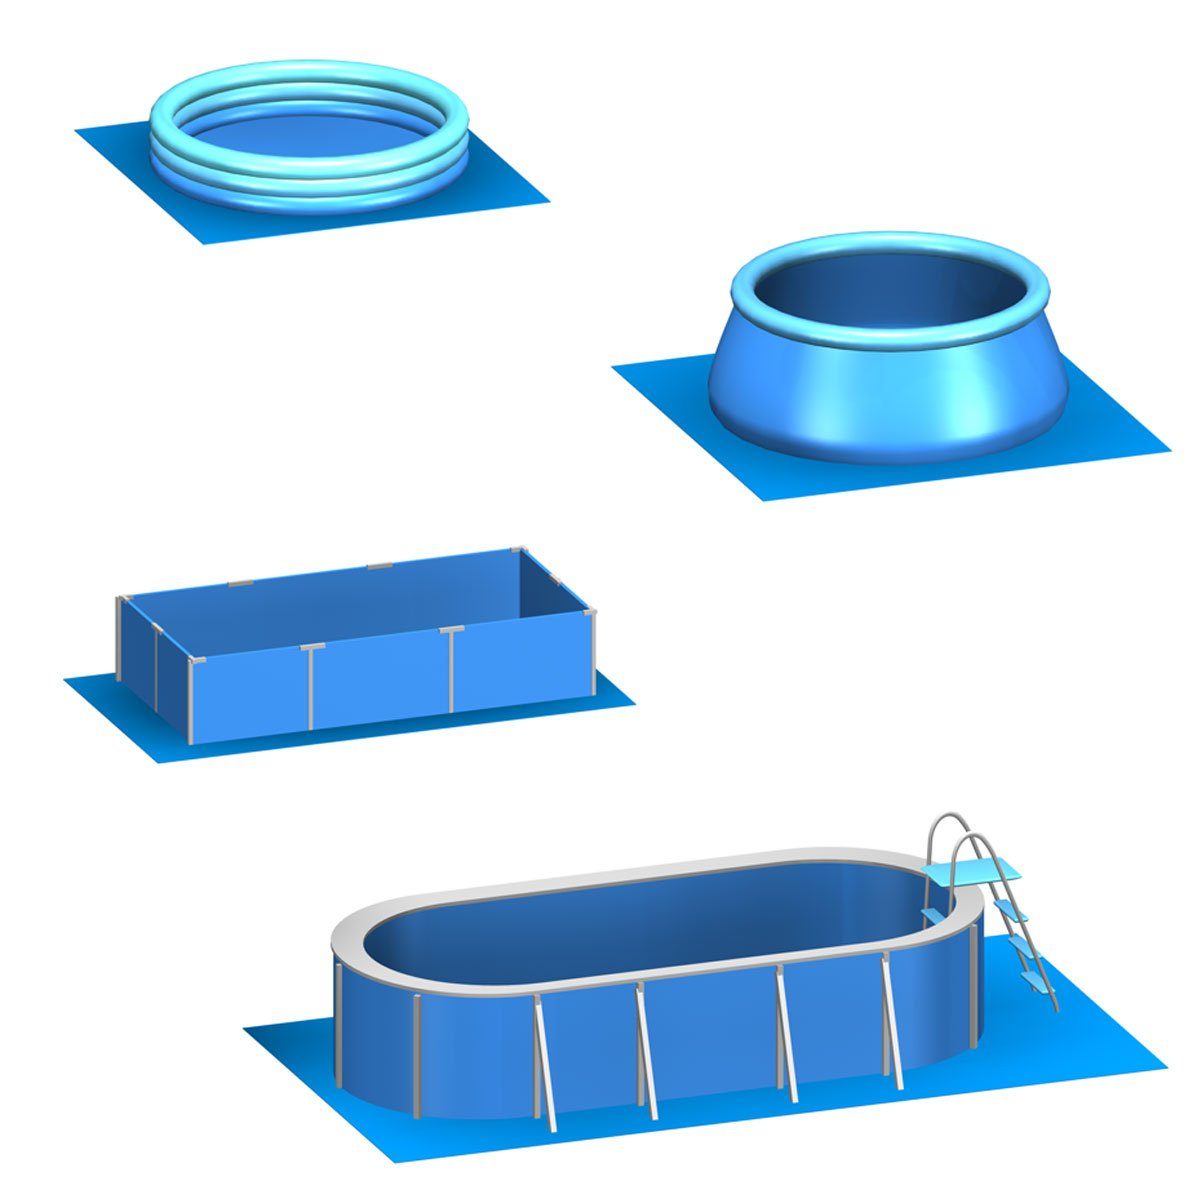 Blau 7 Set, EVA Bodenmatte rutschfest m² 20 62x62 Stecksystem Poolunterlage Matten eyepower Pool